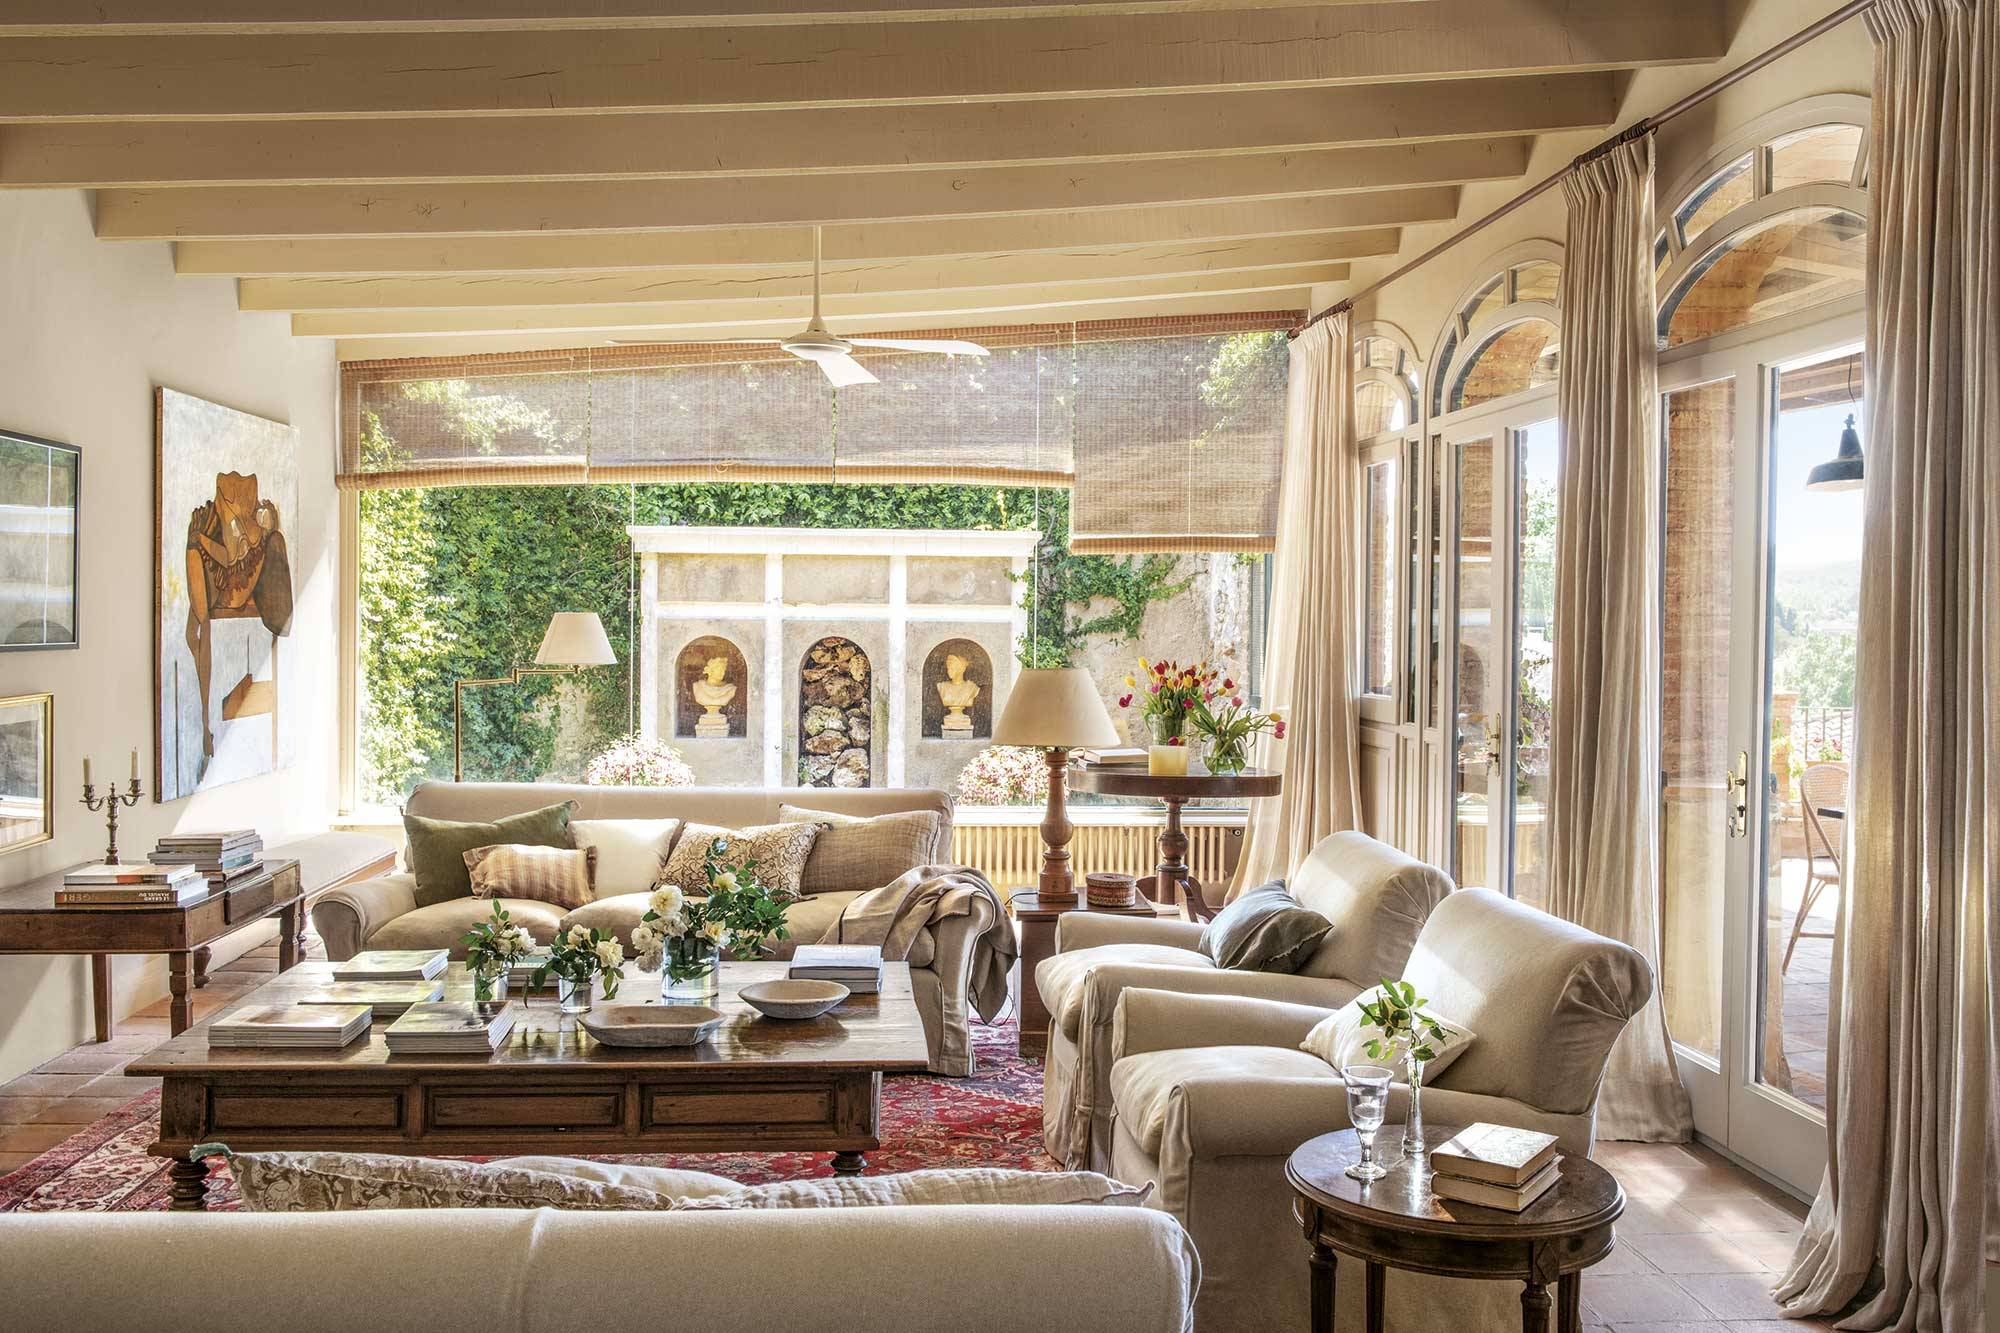 Salón de estilo clásico con sofás beige y muebles de maderas nobles. 